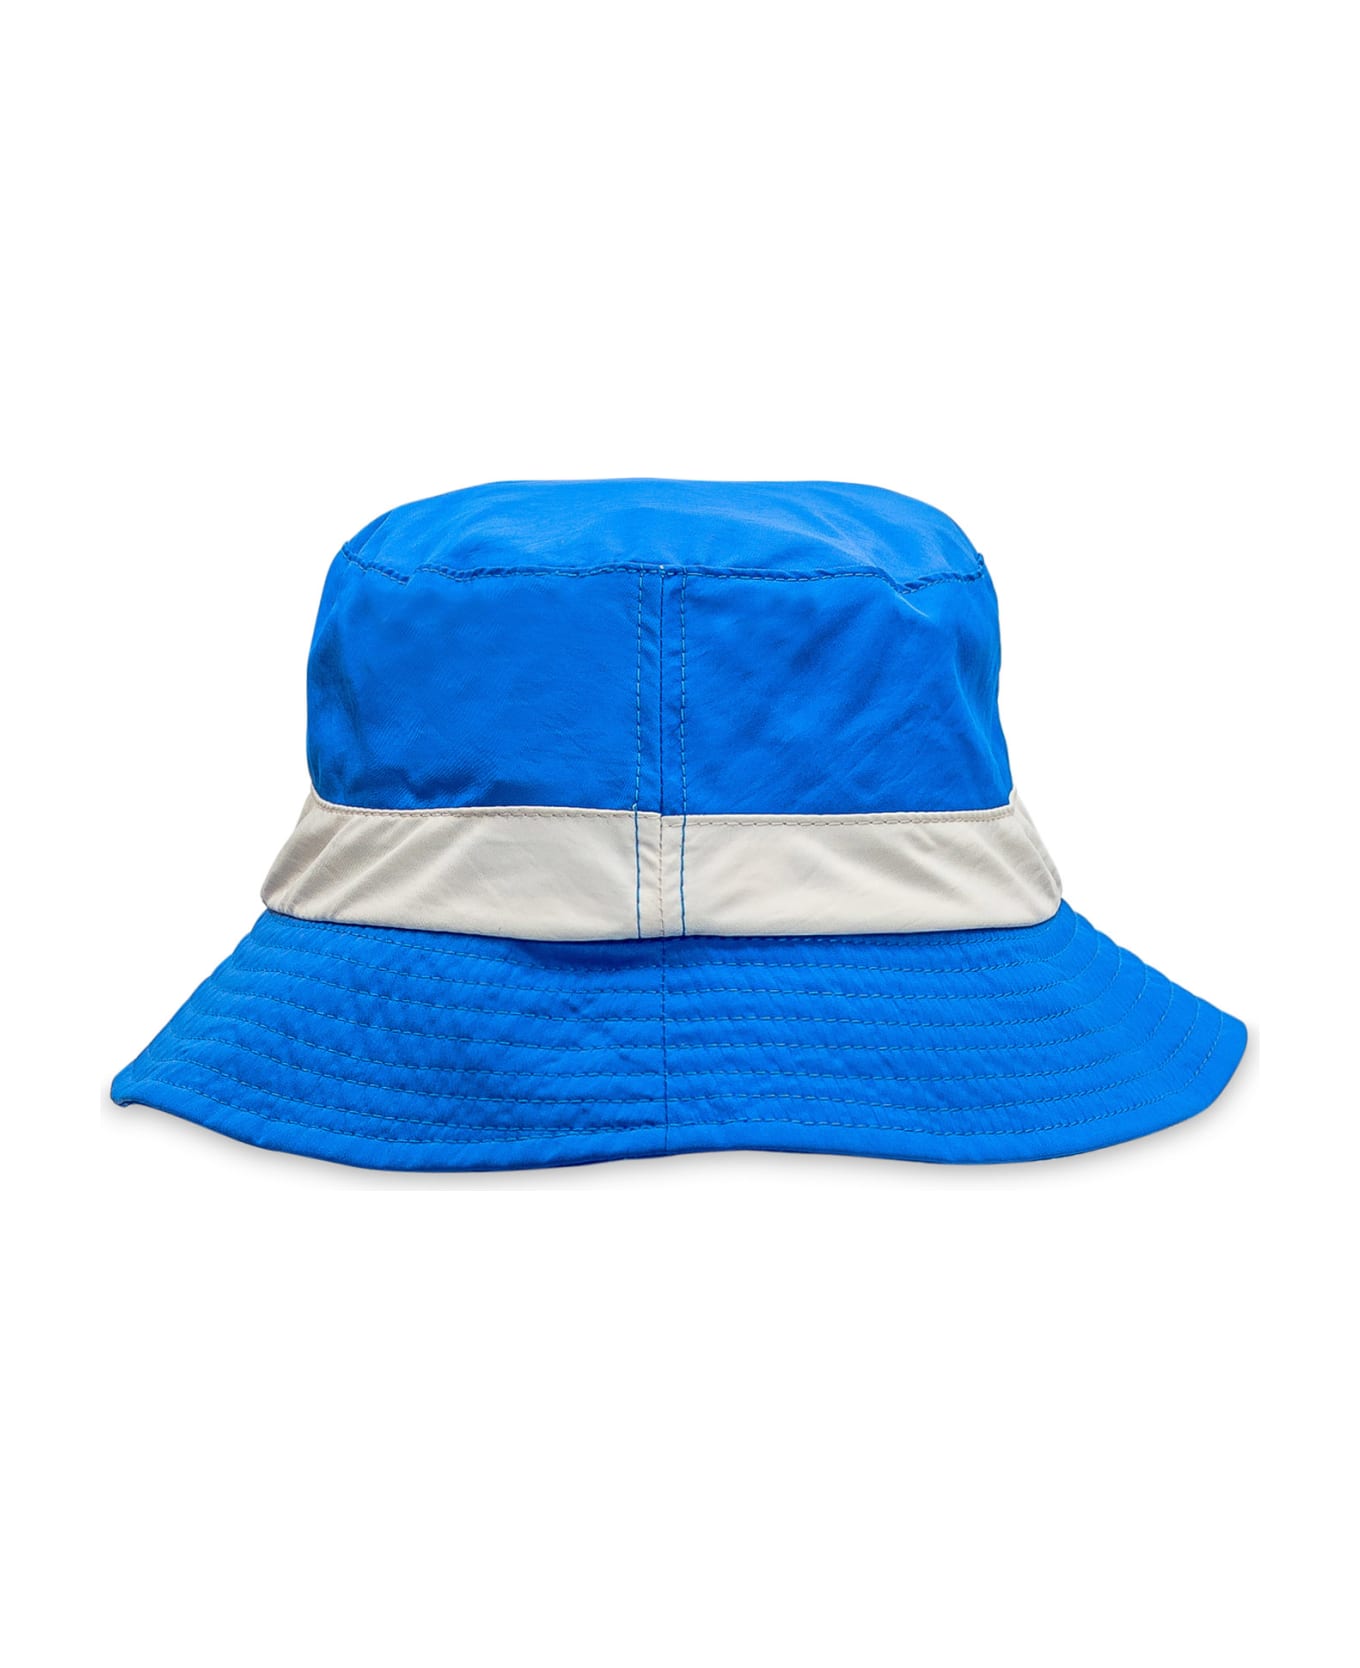 J.W. Anderson Logo Hat - BLUE/WHITE